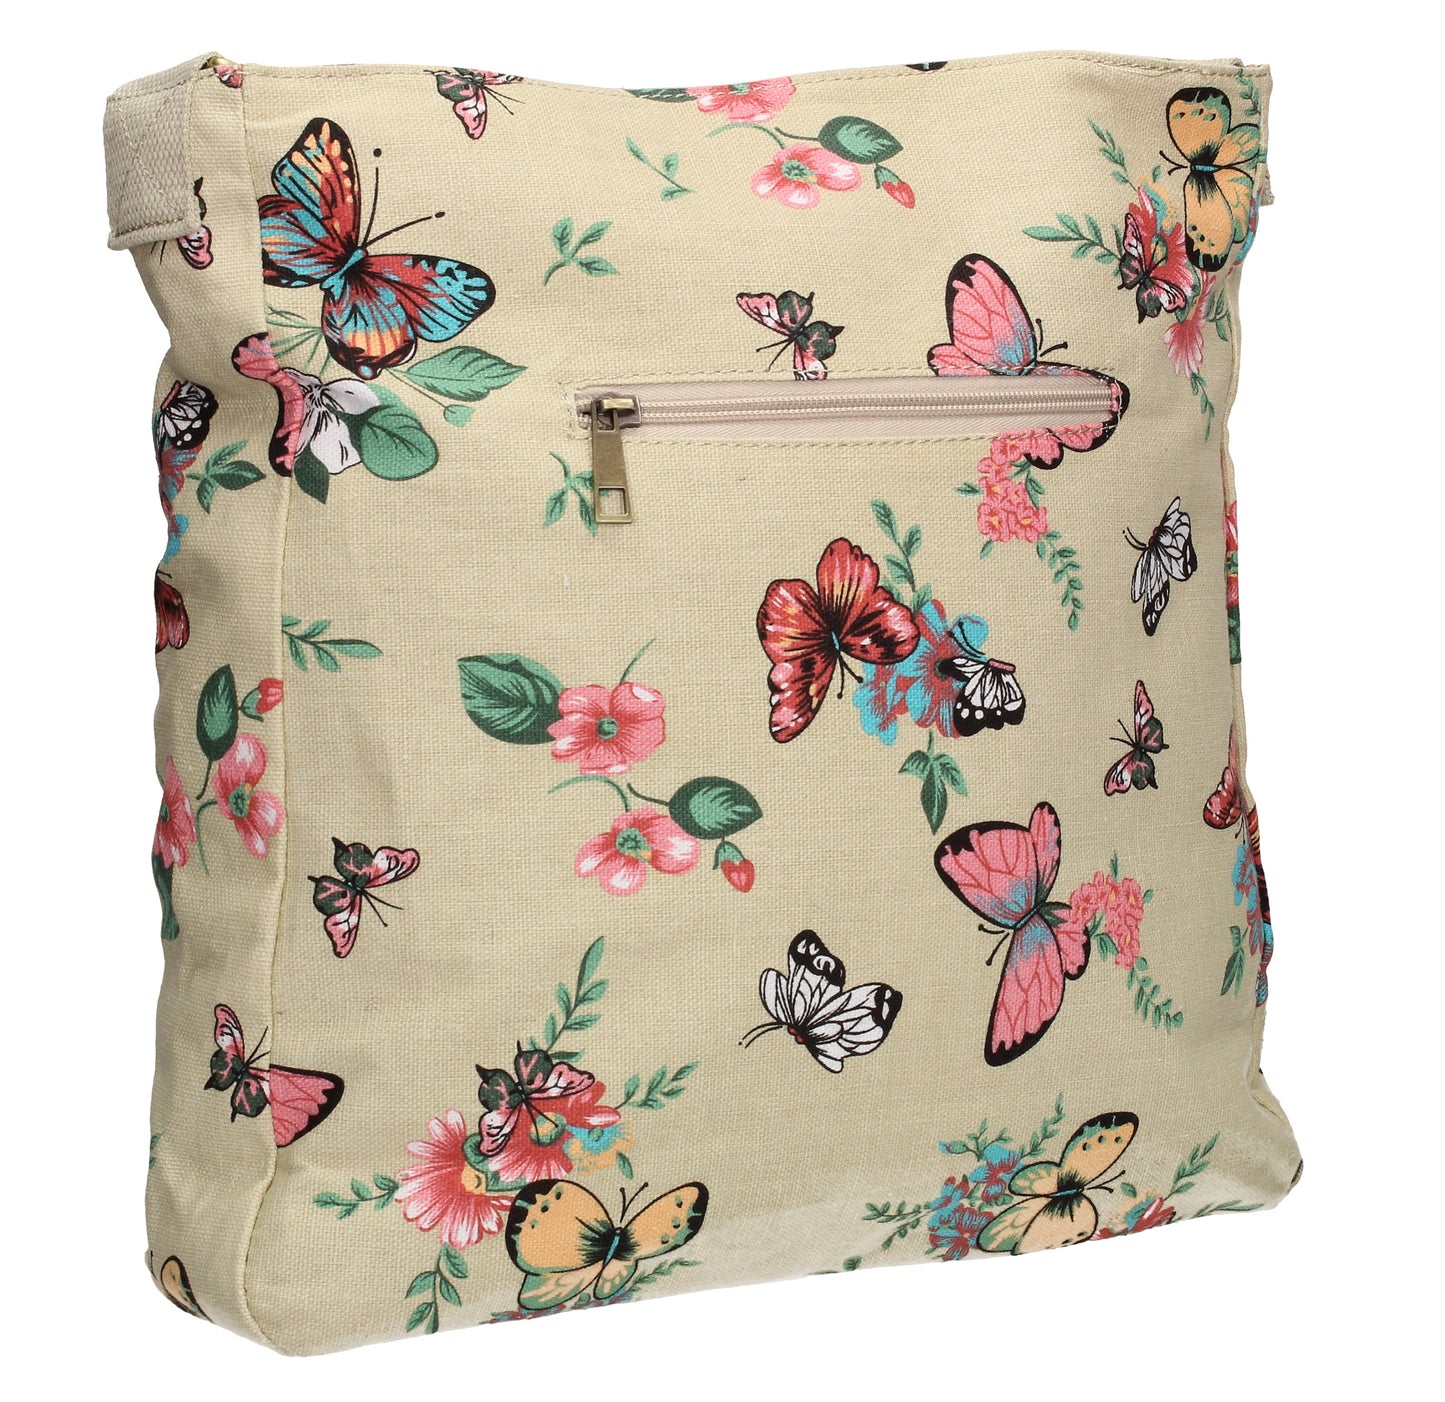 Swanky Swans Casper Butterfly Print Crossbody Bag in BeigeWomens Girls Boys School Crossbody Animal Cute